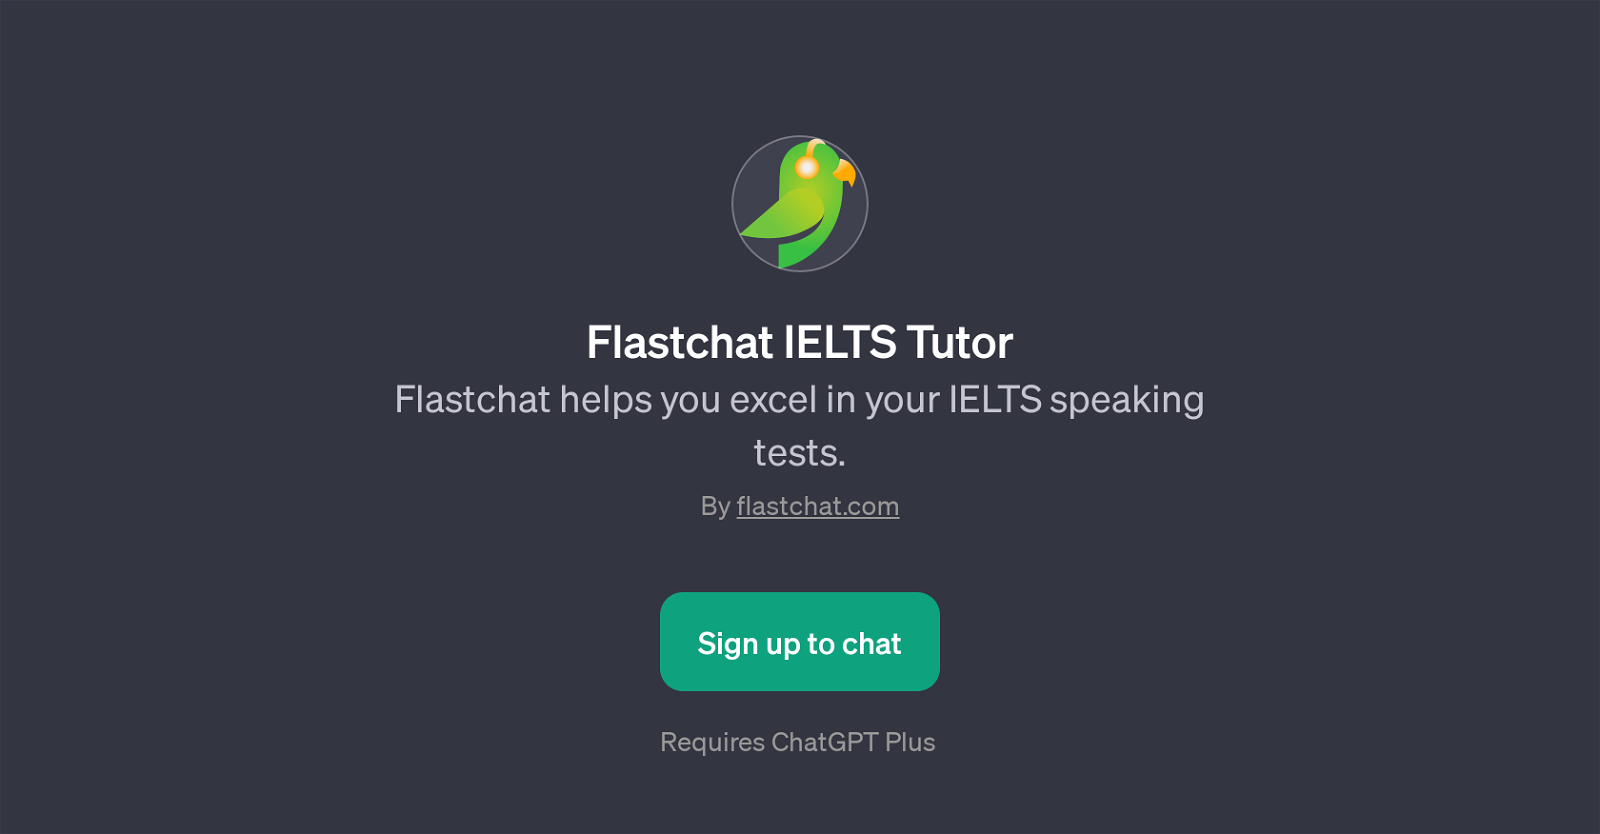 Flastchat IELTS Tutor website